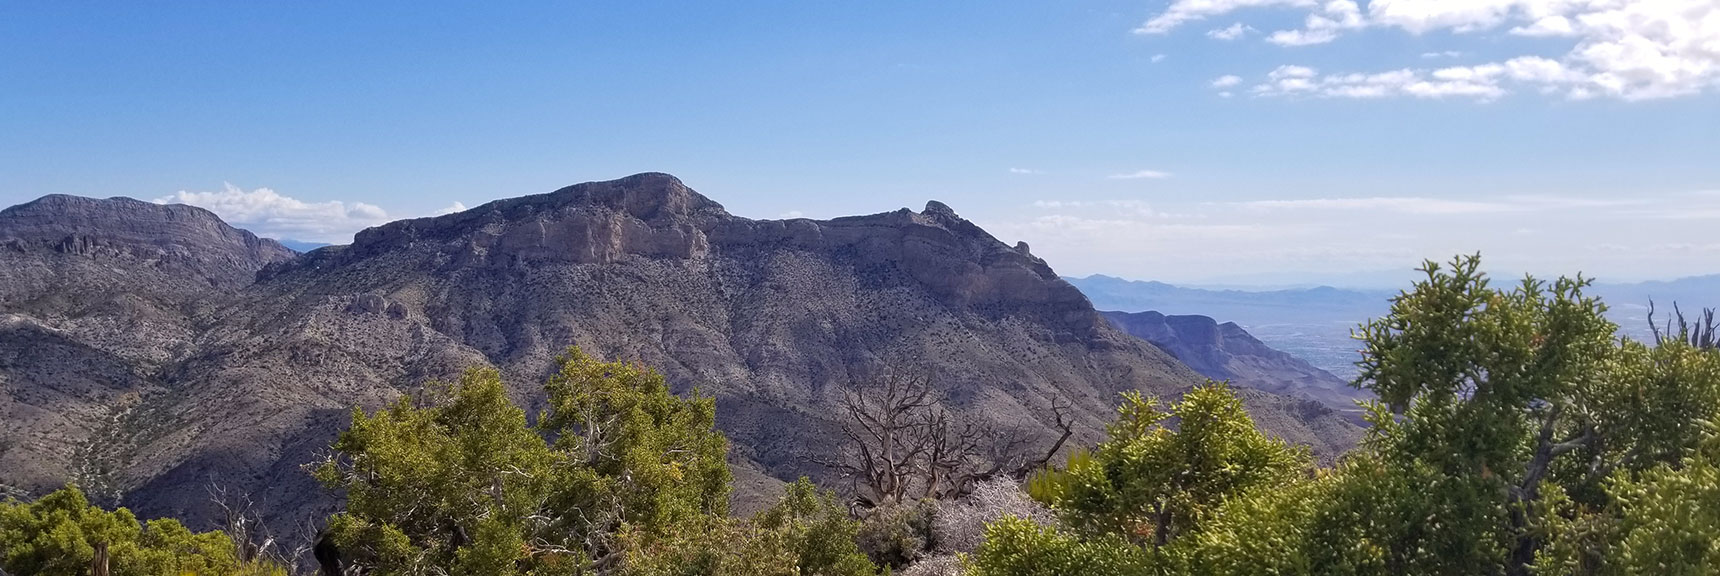 Damsel Peak Viewed from Turtlehead Peak Summit in Red Rock National Park, Nevada